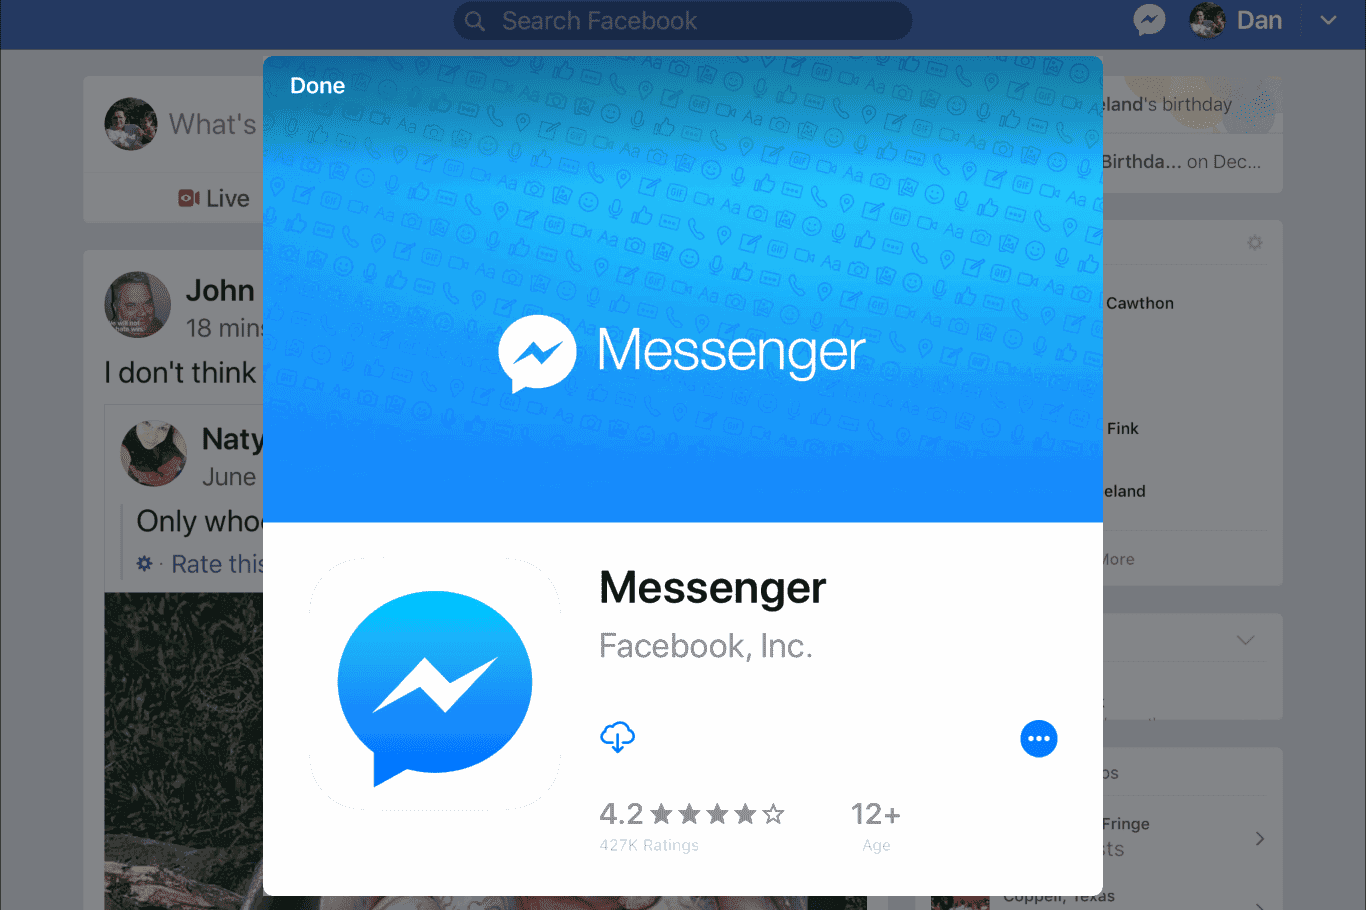 How do I Unspam someone using the Messenger app?